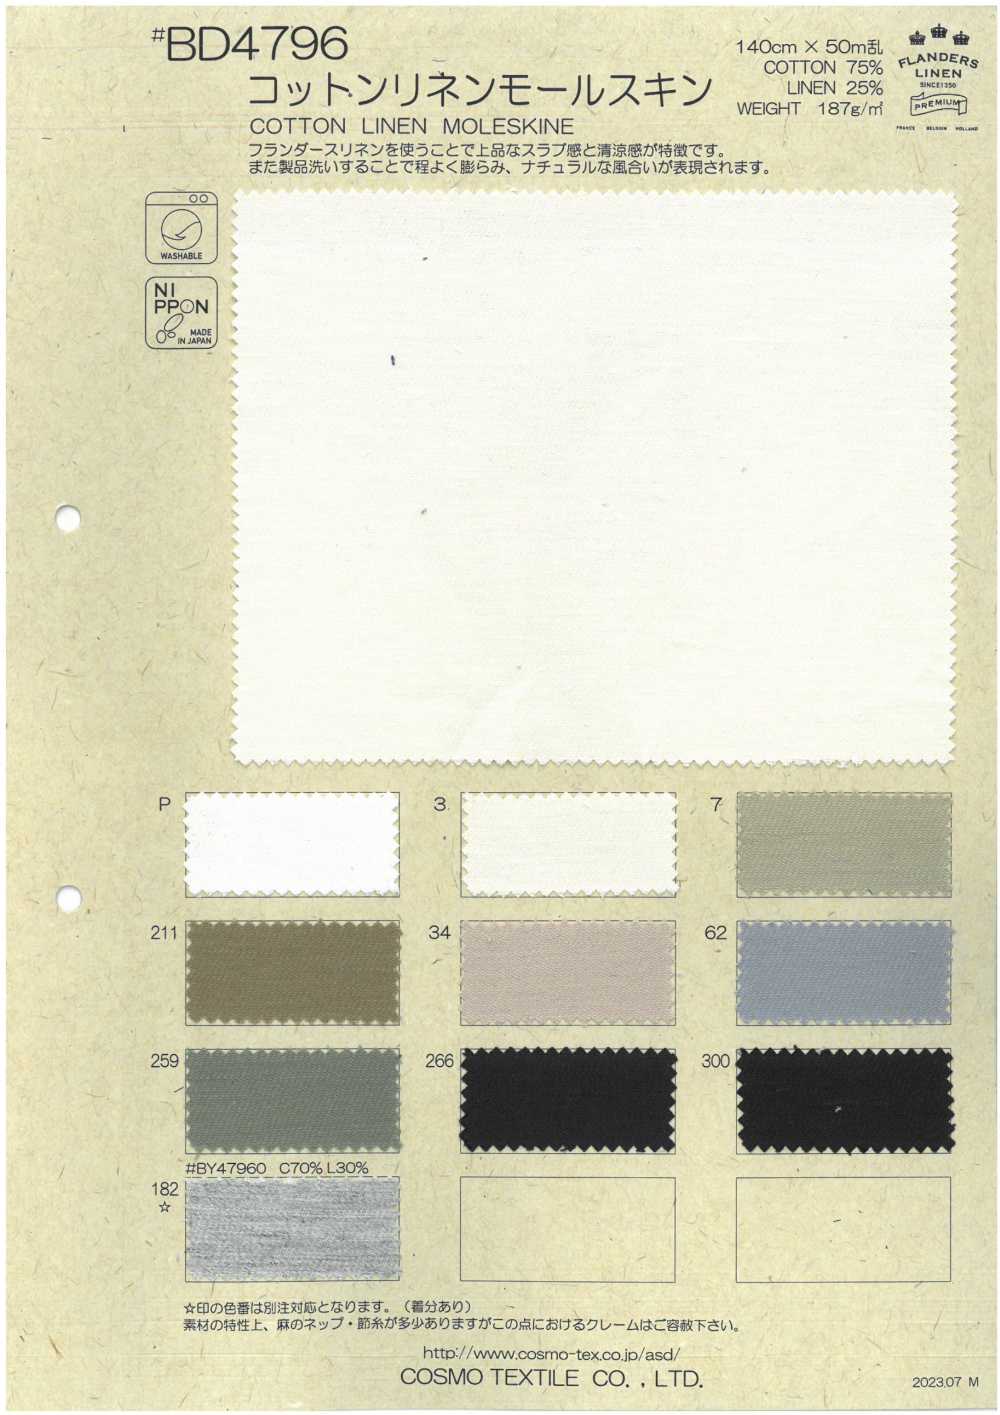 BD4796 Moleskine Coton Lin[Fabrication De Textile] COSMO TEXTILE